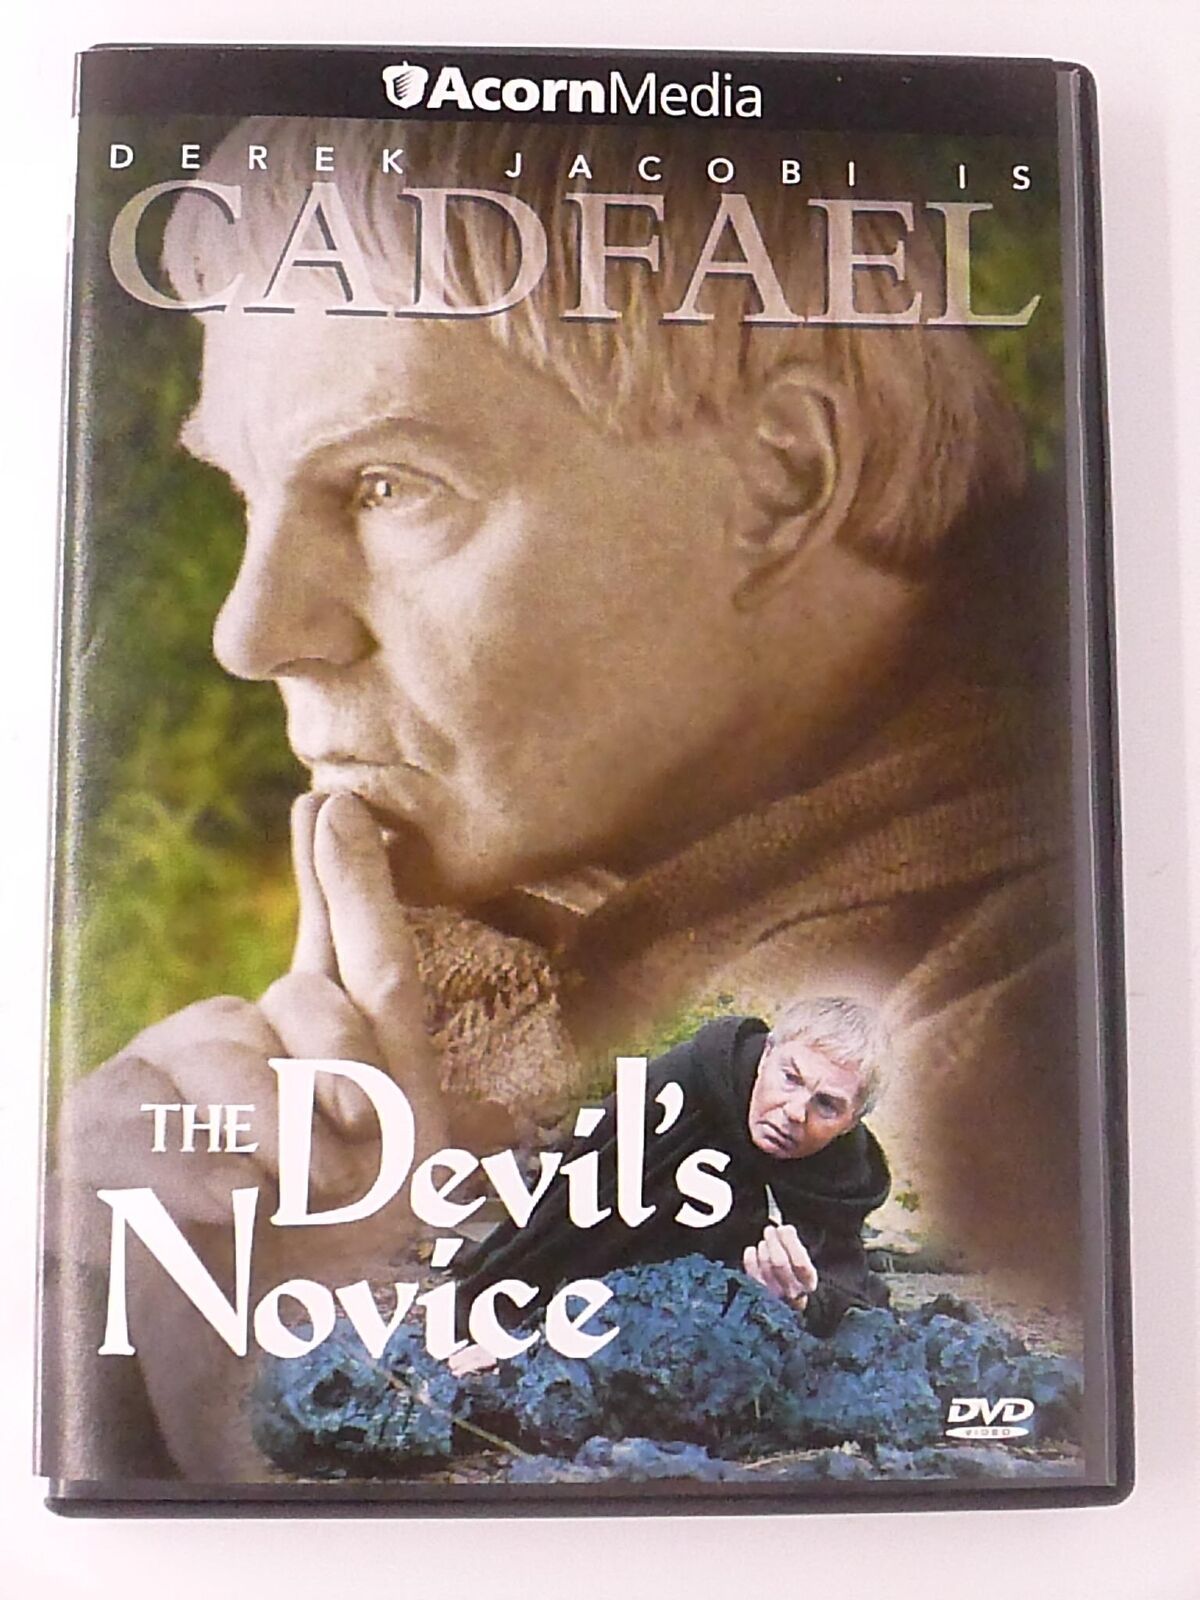 Cadfael - The Devils Novice (DVD) - I1225